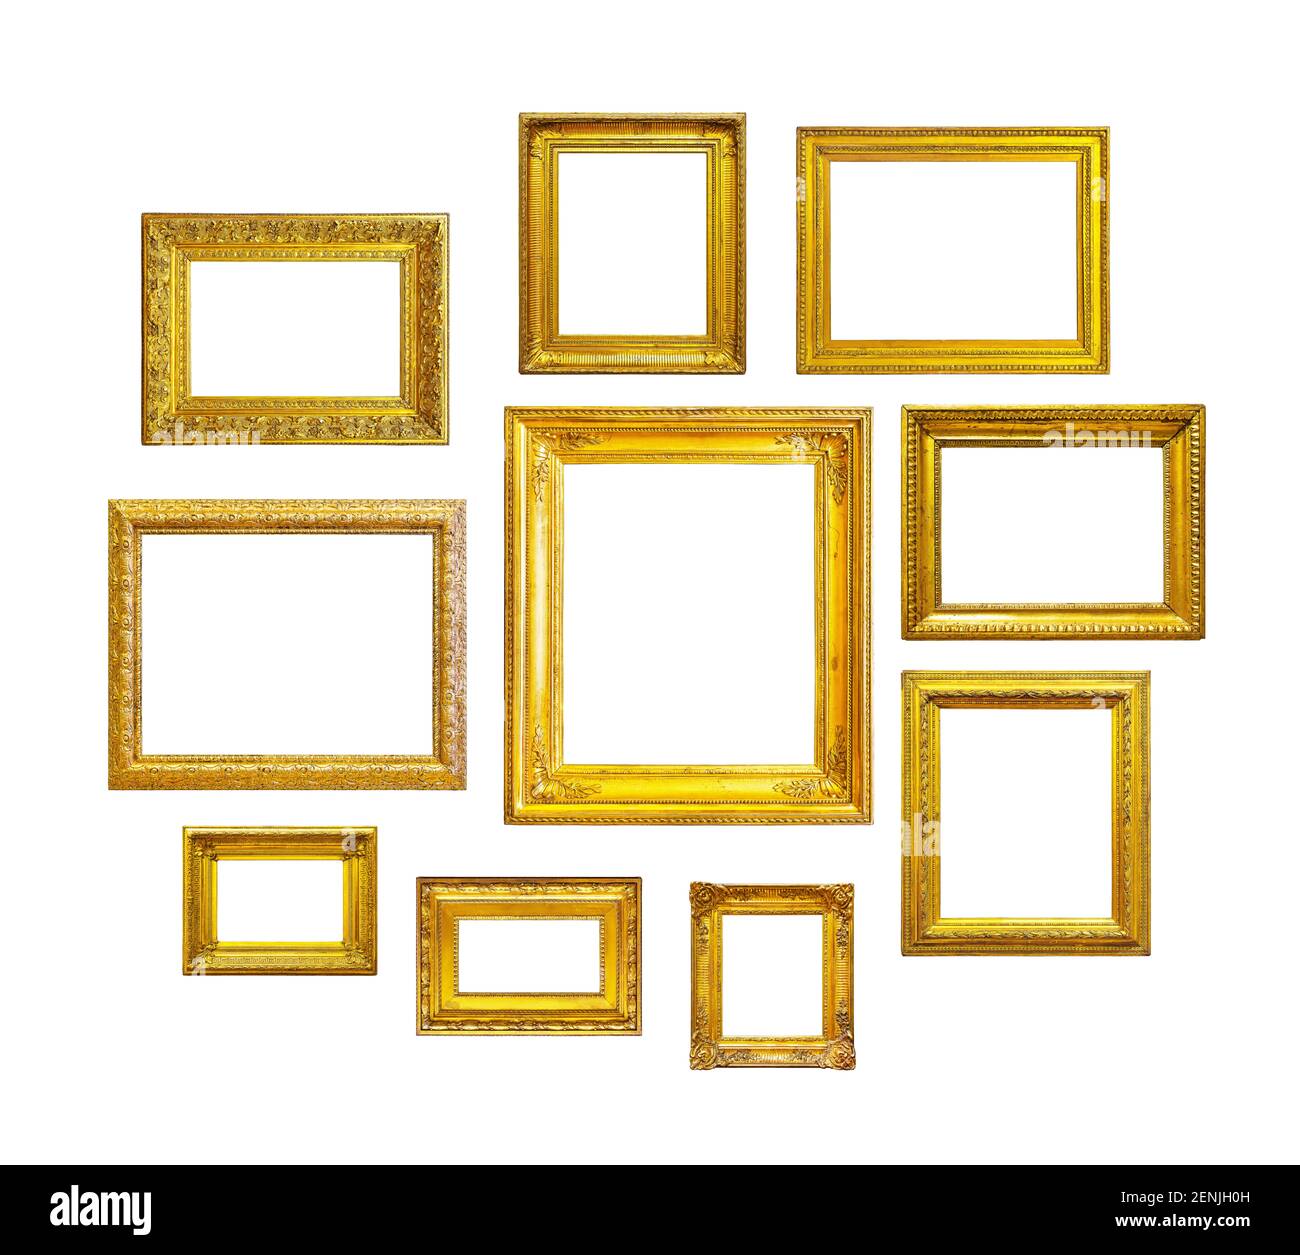 https://c8.alamy.com/compes/2enjh0h/marcos-vintage-dorados-sobre-fondo-blanco-conjunto-de-marcos-dorados-para-pinturas-espejos-o-fotos-aisladas-sobre-fondo-blanco-2enjh0h.jpg